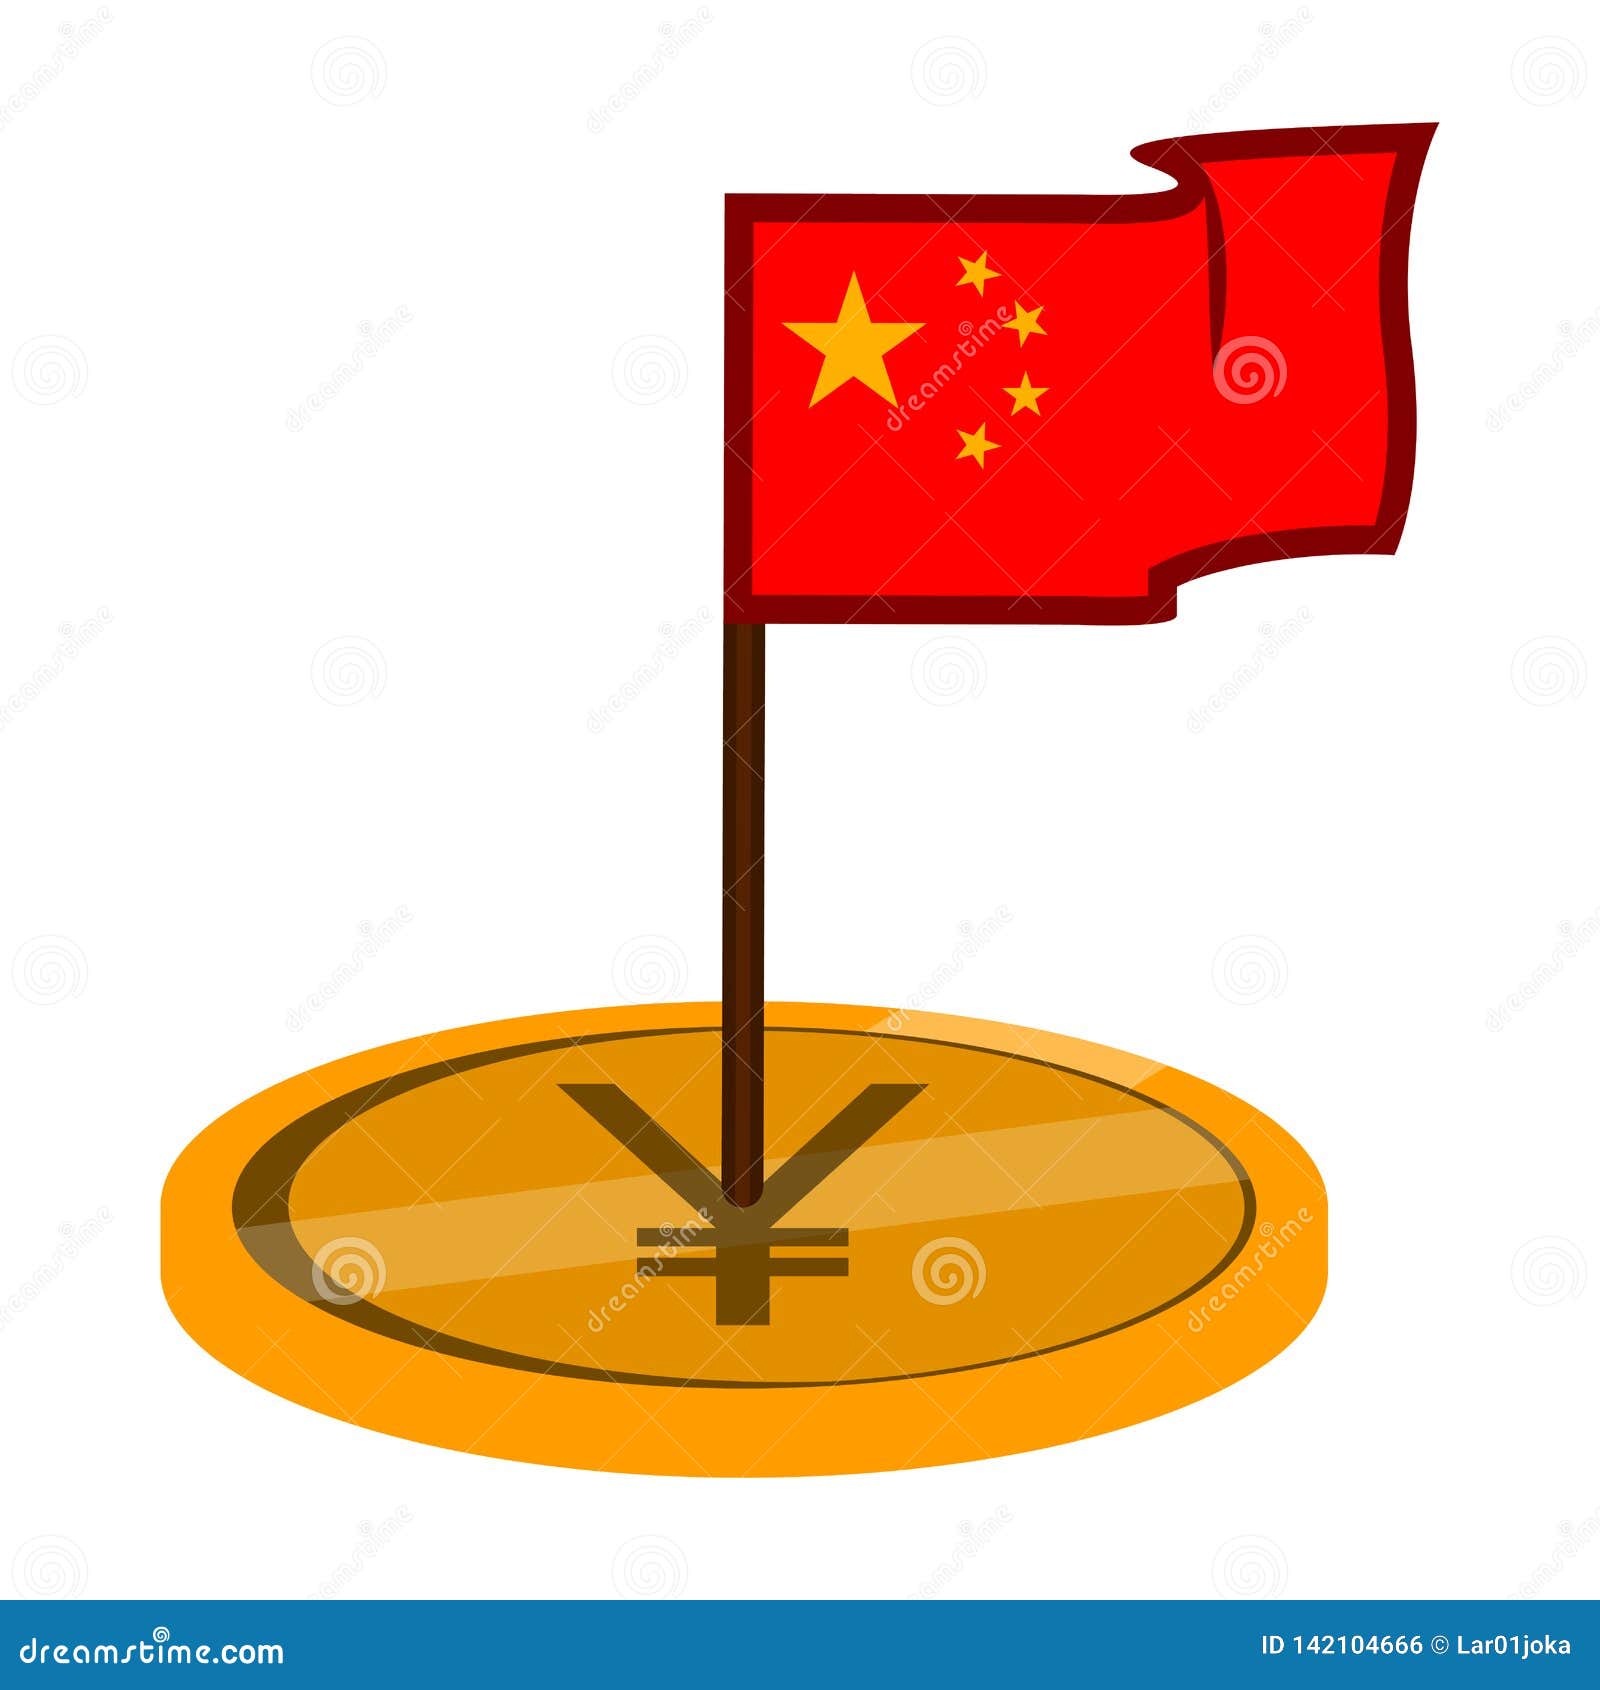 httpsflag china yuan coin vector illustration design flag china yuan coin image142104666